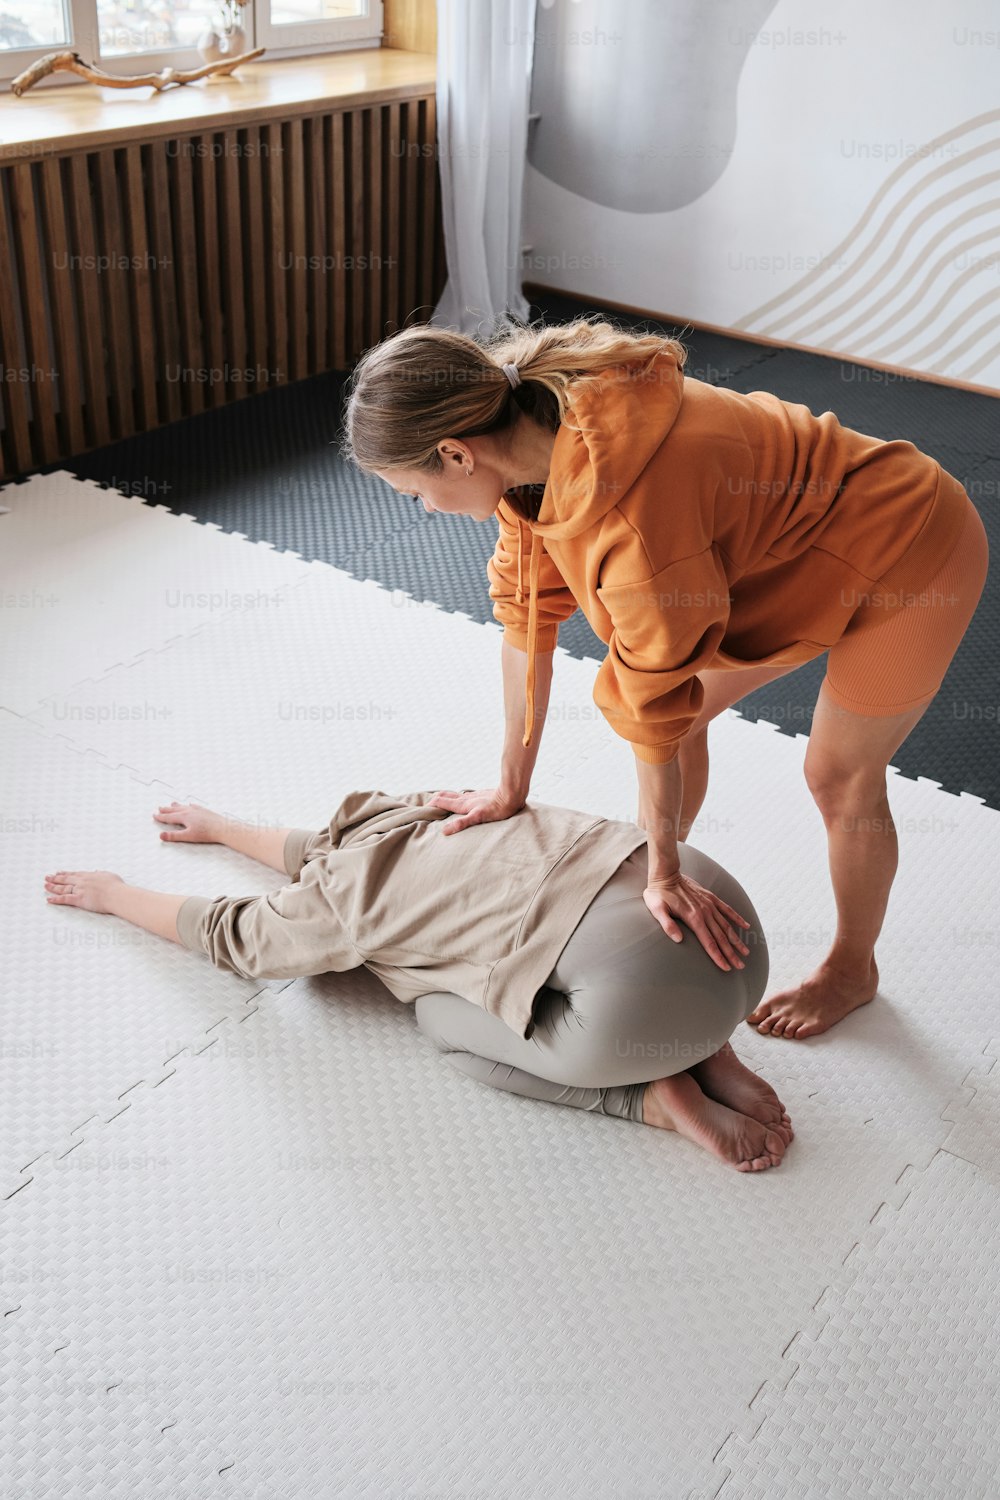 a woman helping a man on a mattress